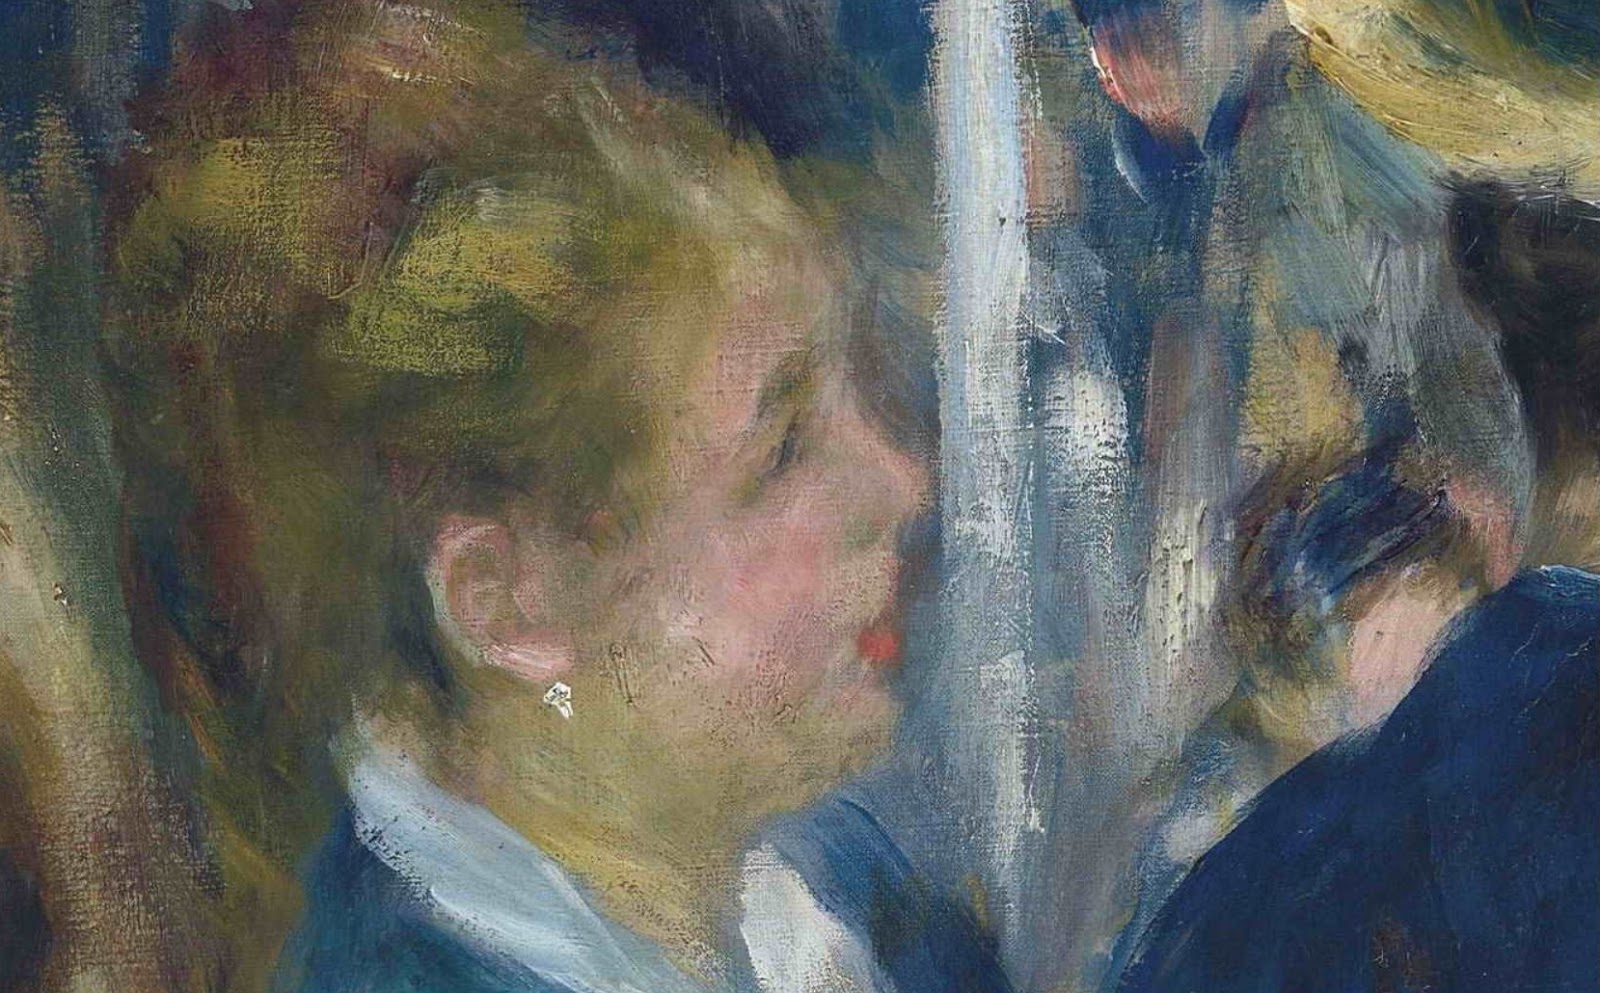 Pierre+Auguste+Renoir-1841-1-19 (448).JPG